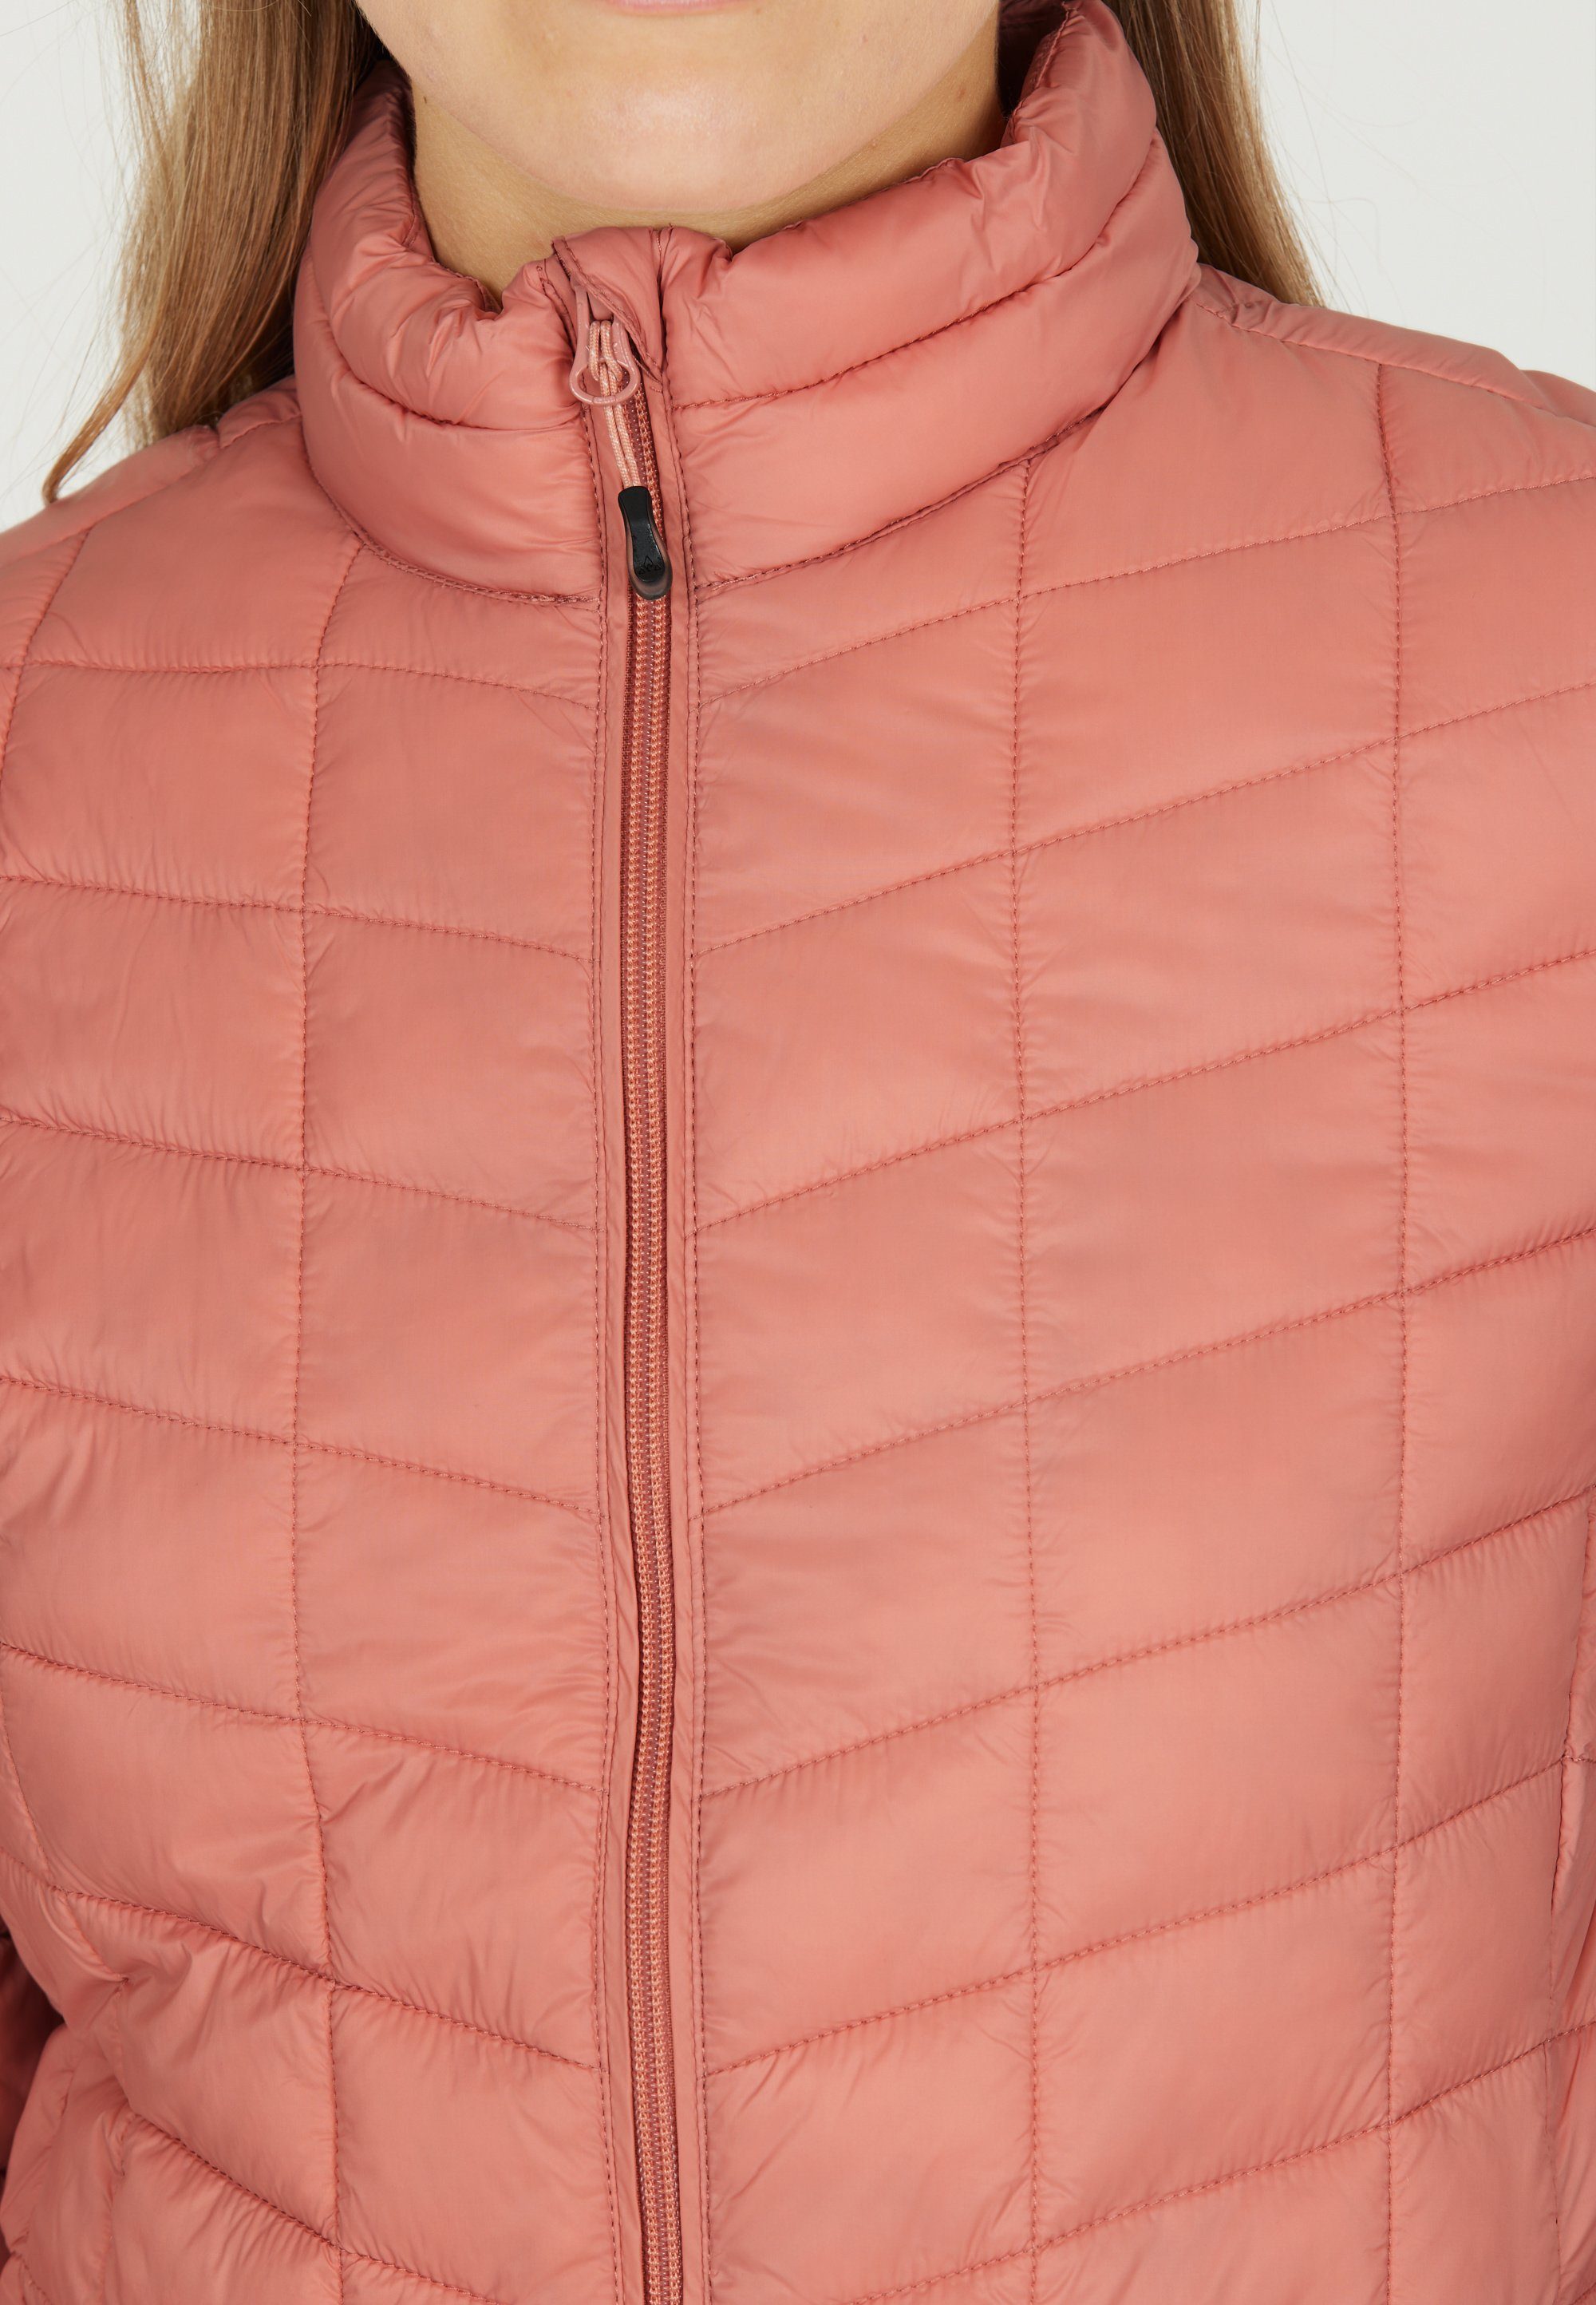 WHISTLER Outdoorjacke Kate in tollem rosa Stepp-Design